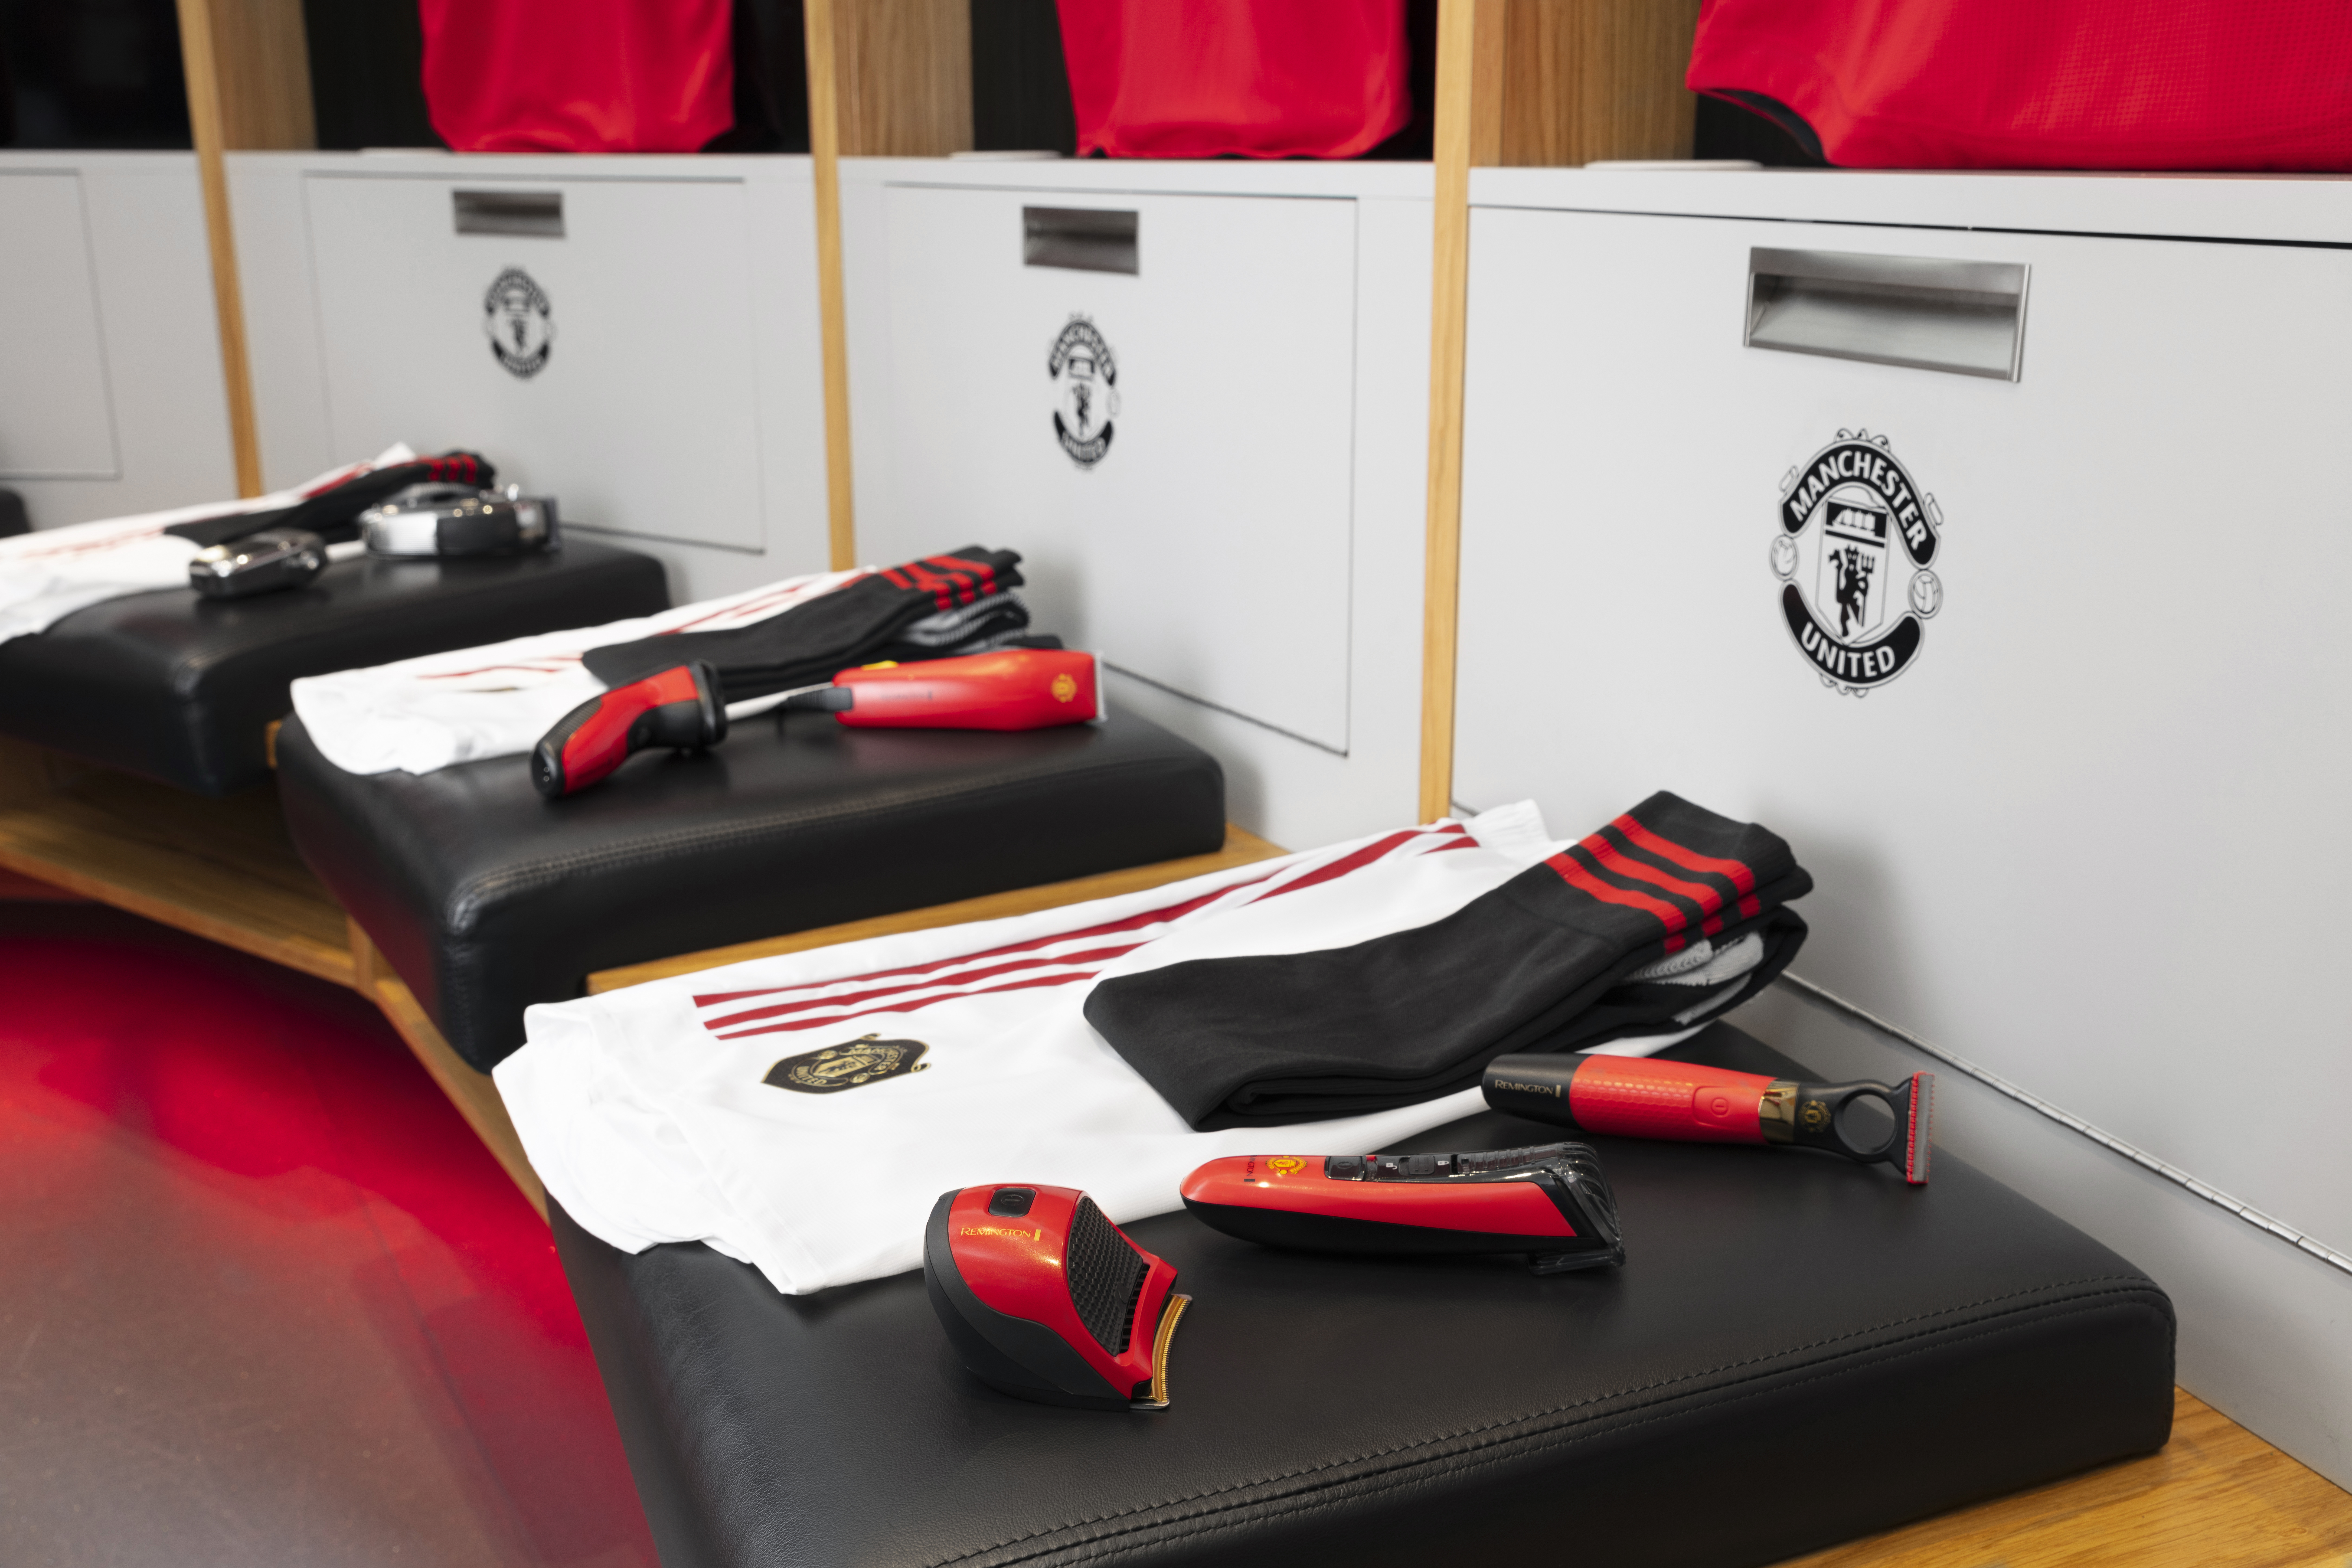 Remington lanza productos para el cuidado personal con el Manchester United